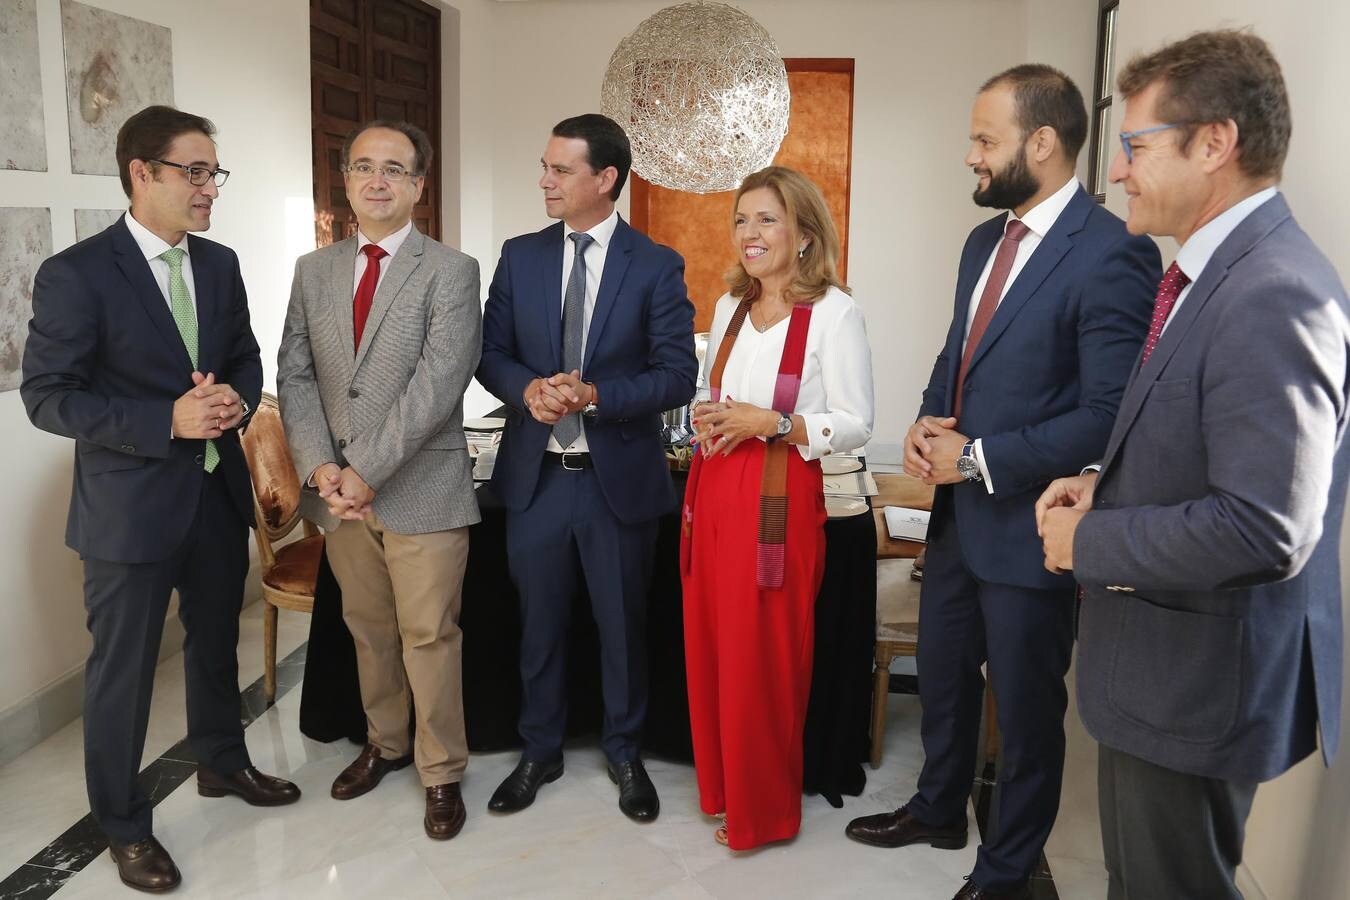 El encuentro de sanidad de ABC Córdoba, en imágenes